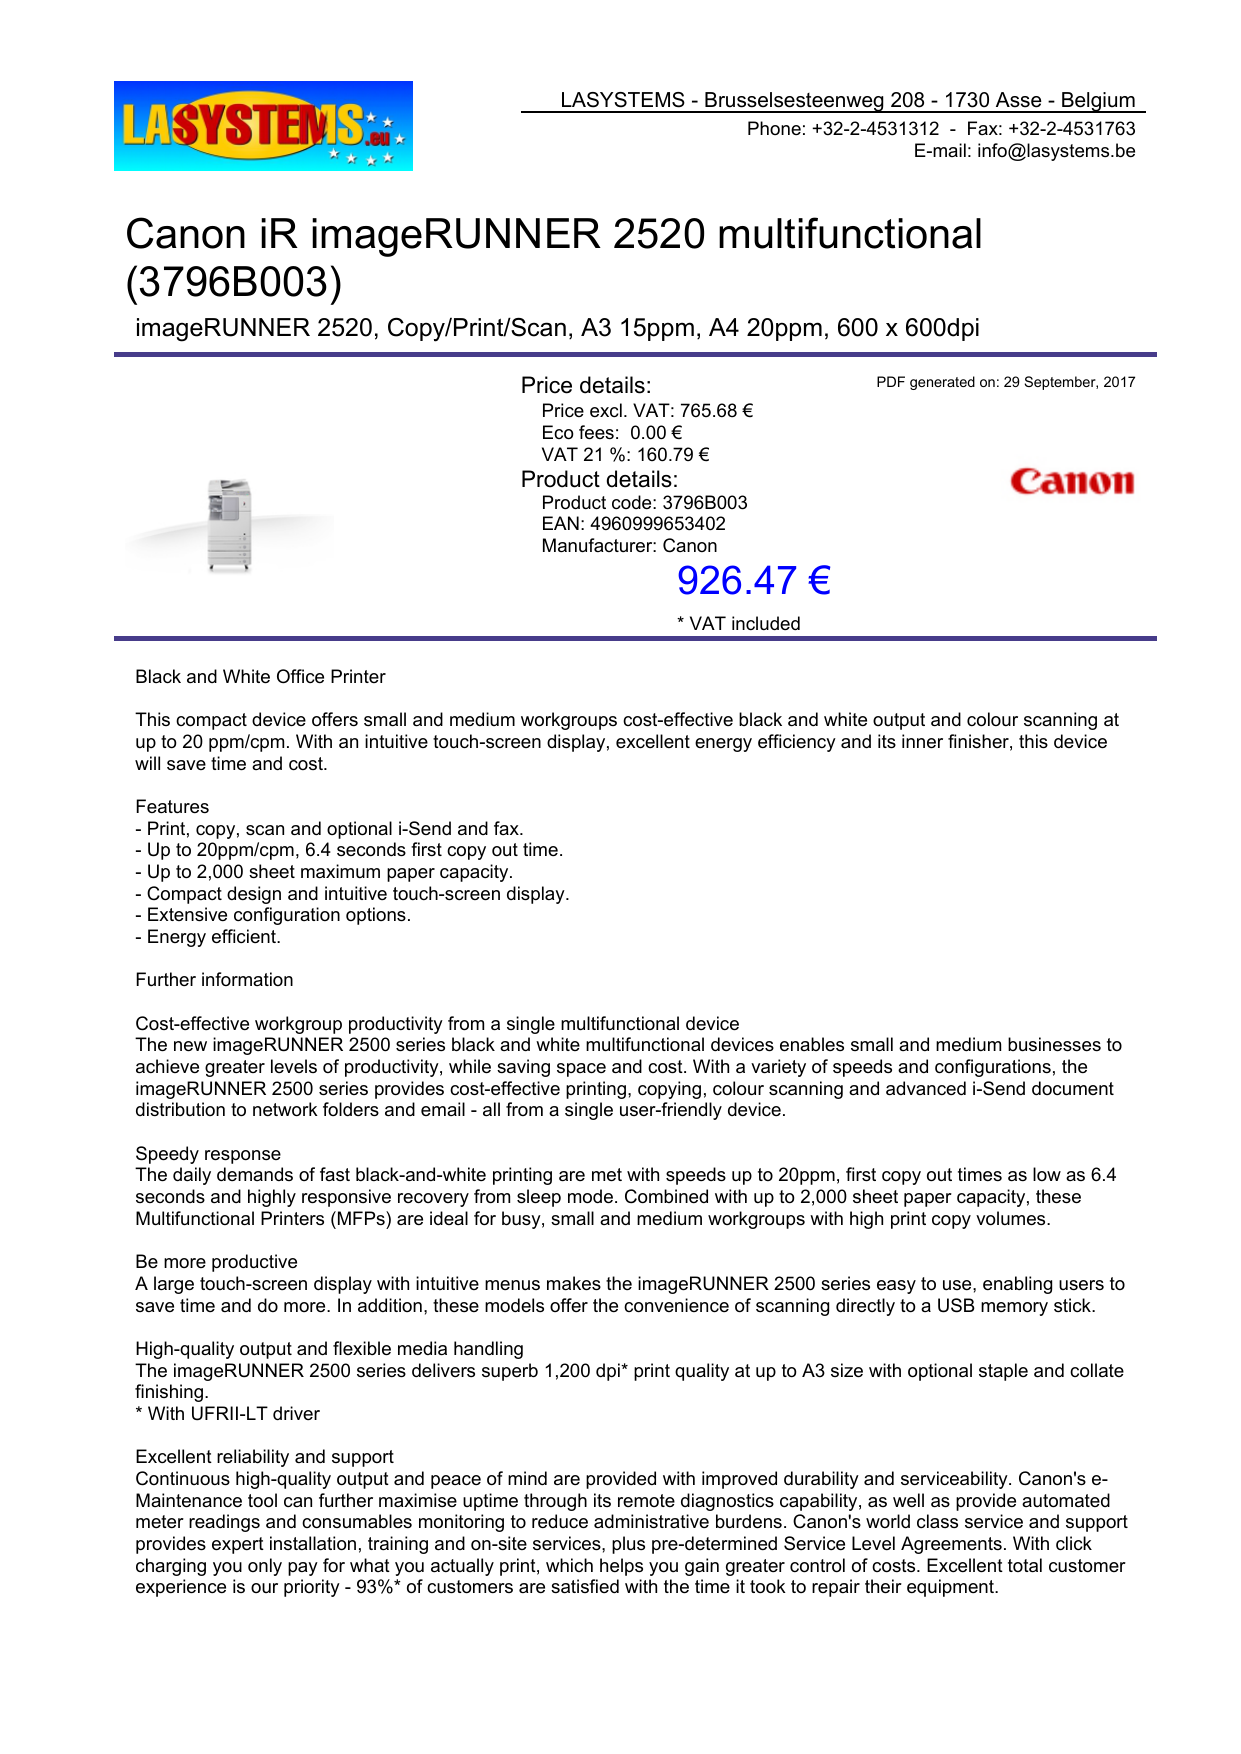 Canon Ir Imagerunner 2520 Multifunctional 3796b003 Manualzz